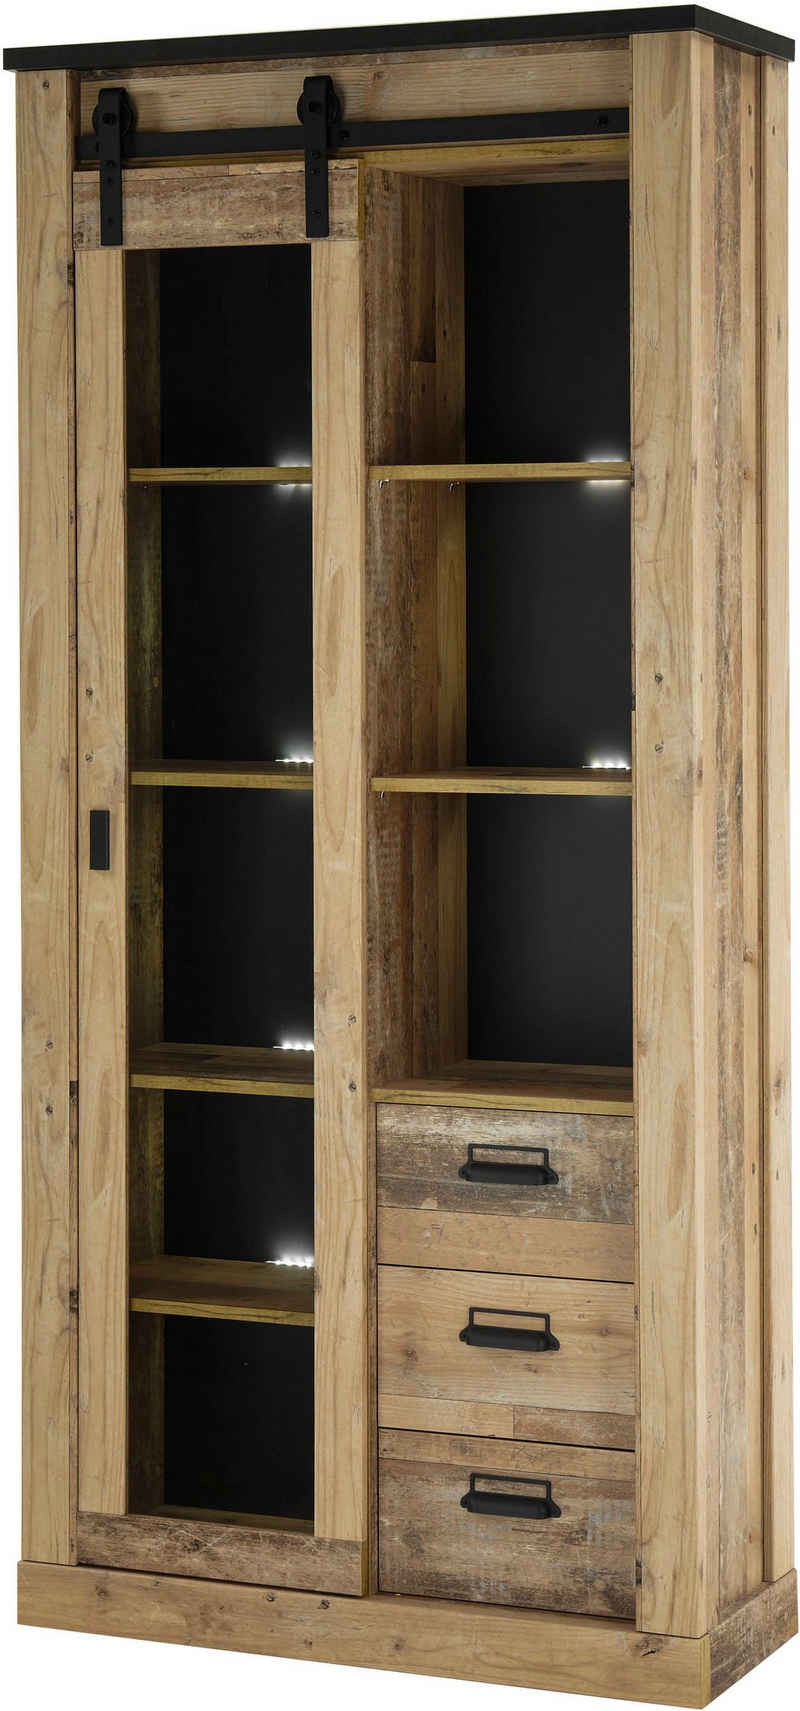 Premium collection by Home affaire Vitrine »SHERWOOD« in modernem Holz Dekor, mit Scheunentorbeschlag und Apothekergriffen aus Metall, Breite 92 cm